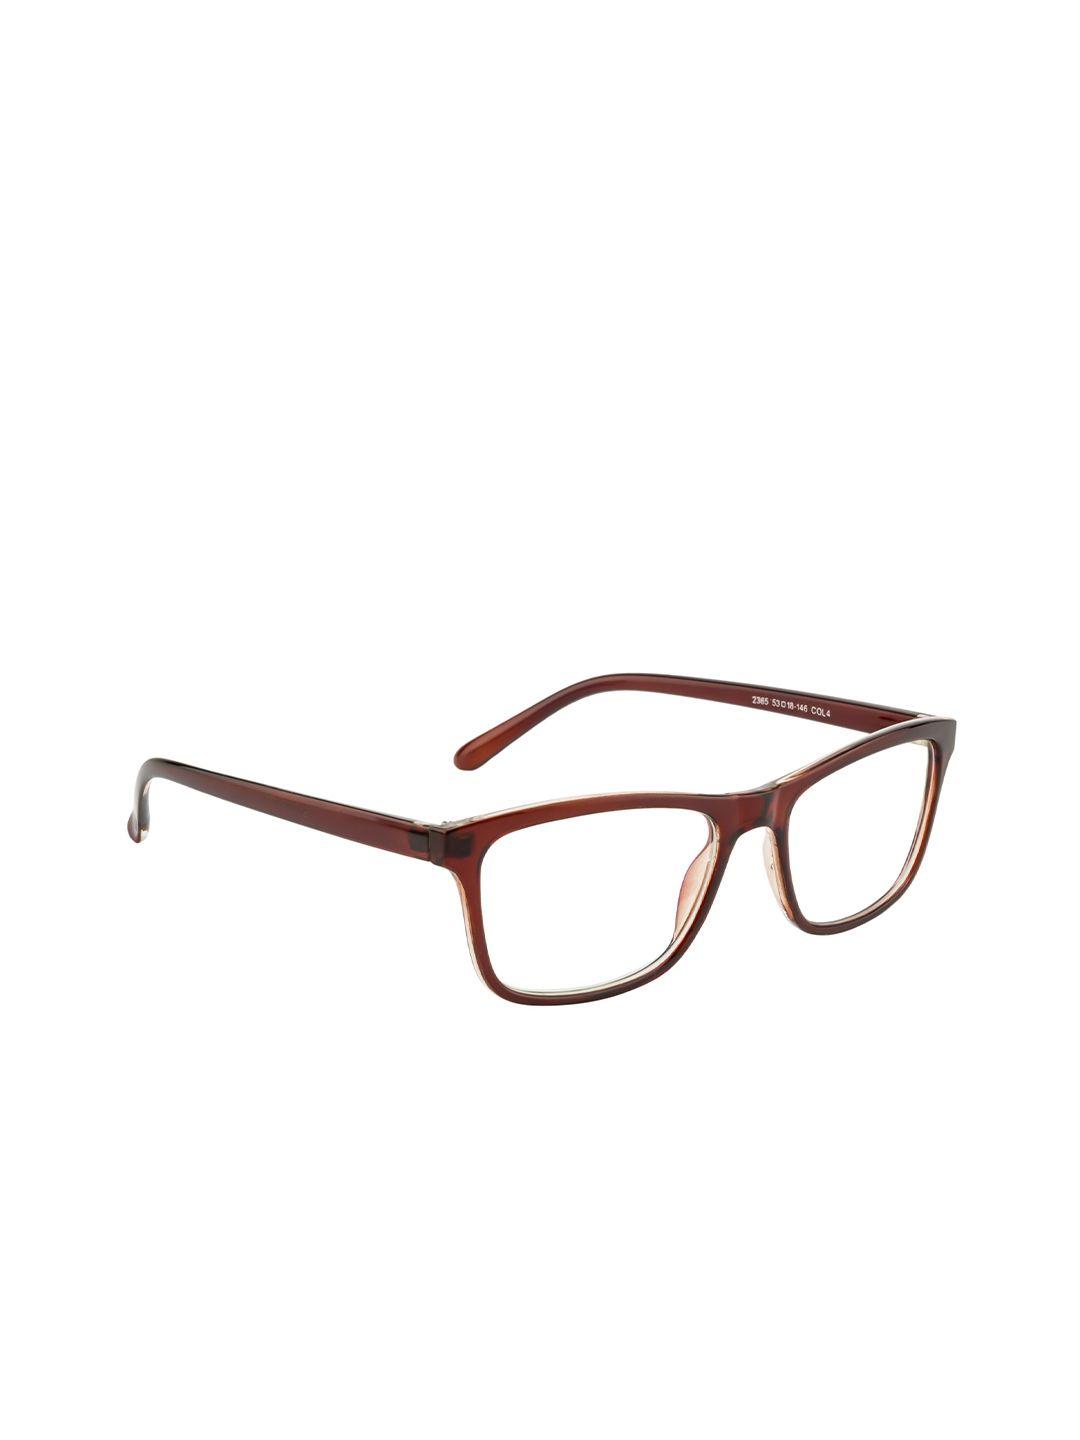 gold berg brown & white full rim wayfarer frames eyeglasses